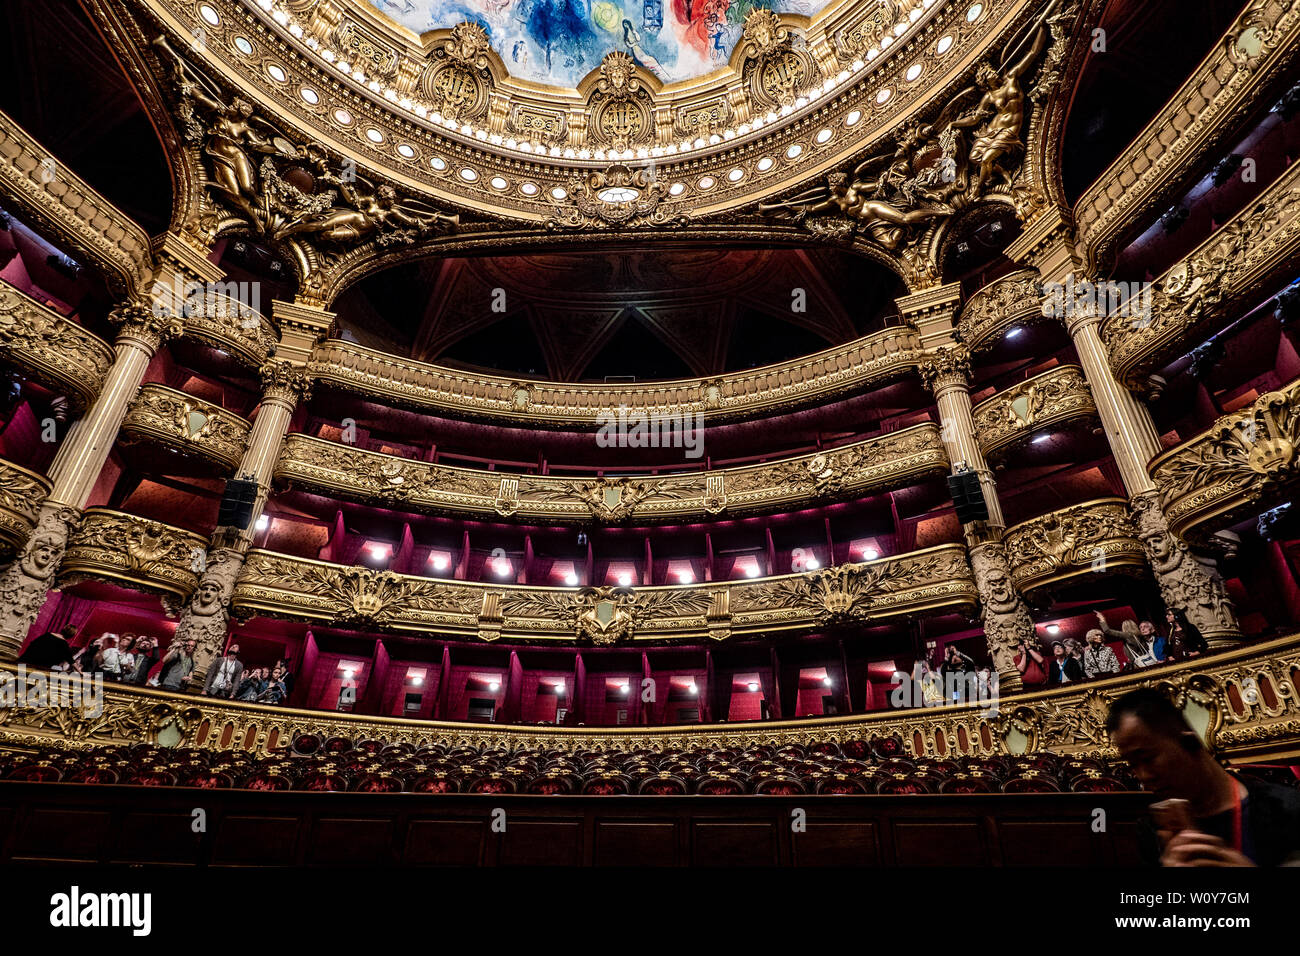 Palais Garnier - Opéra de Paris - Les groupes de contempler l'architecture et de décoration intérieure suditorium. Paris, France - le 14 mai 2019. Banque D'Images